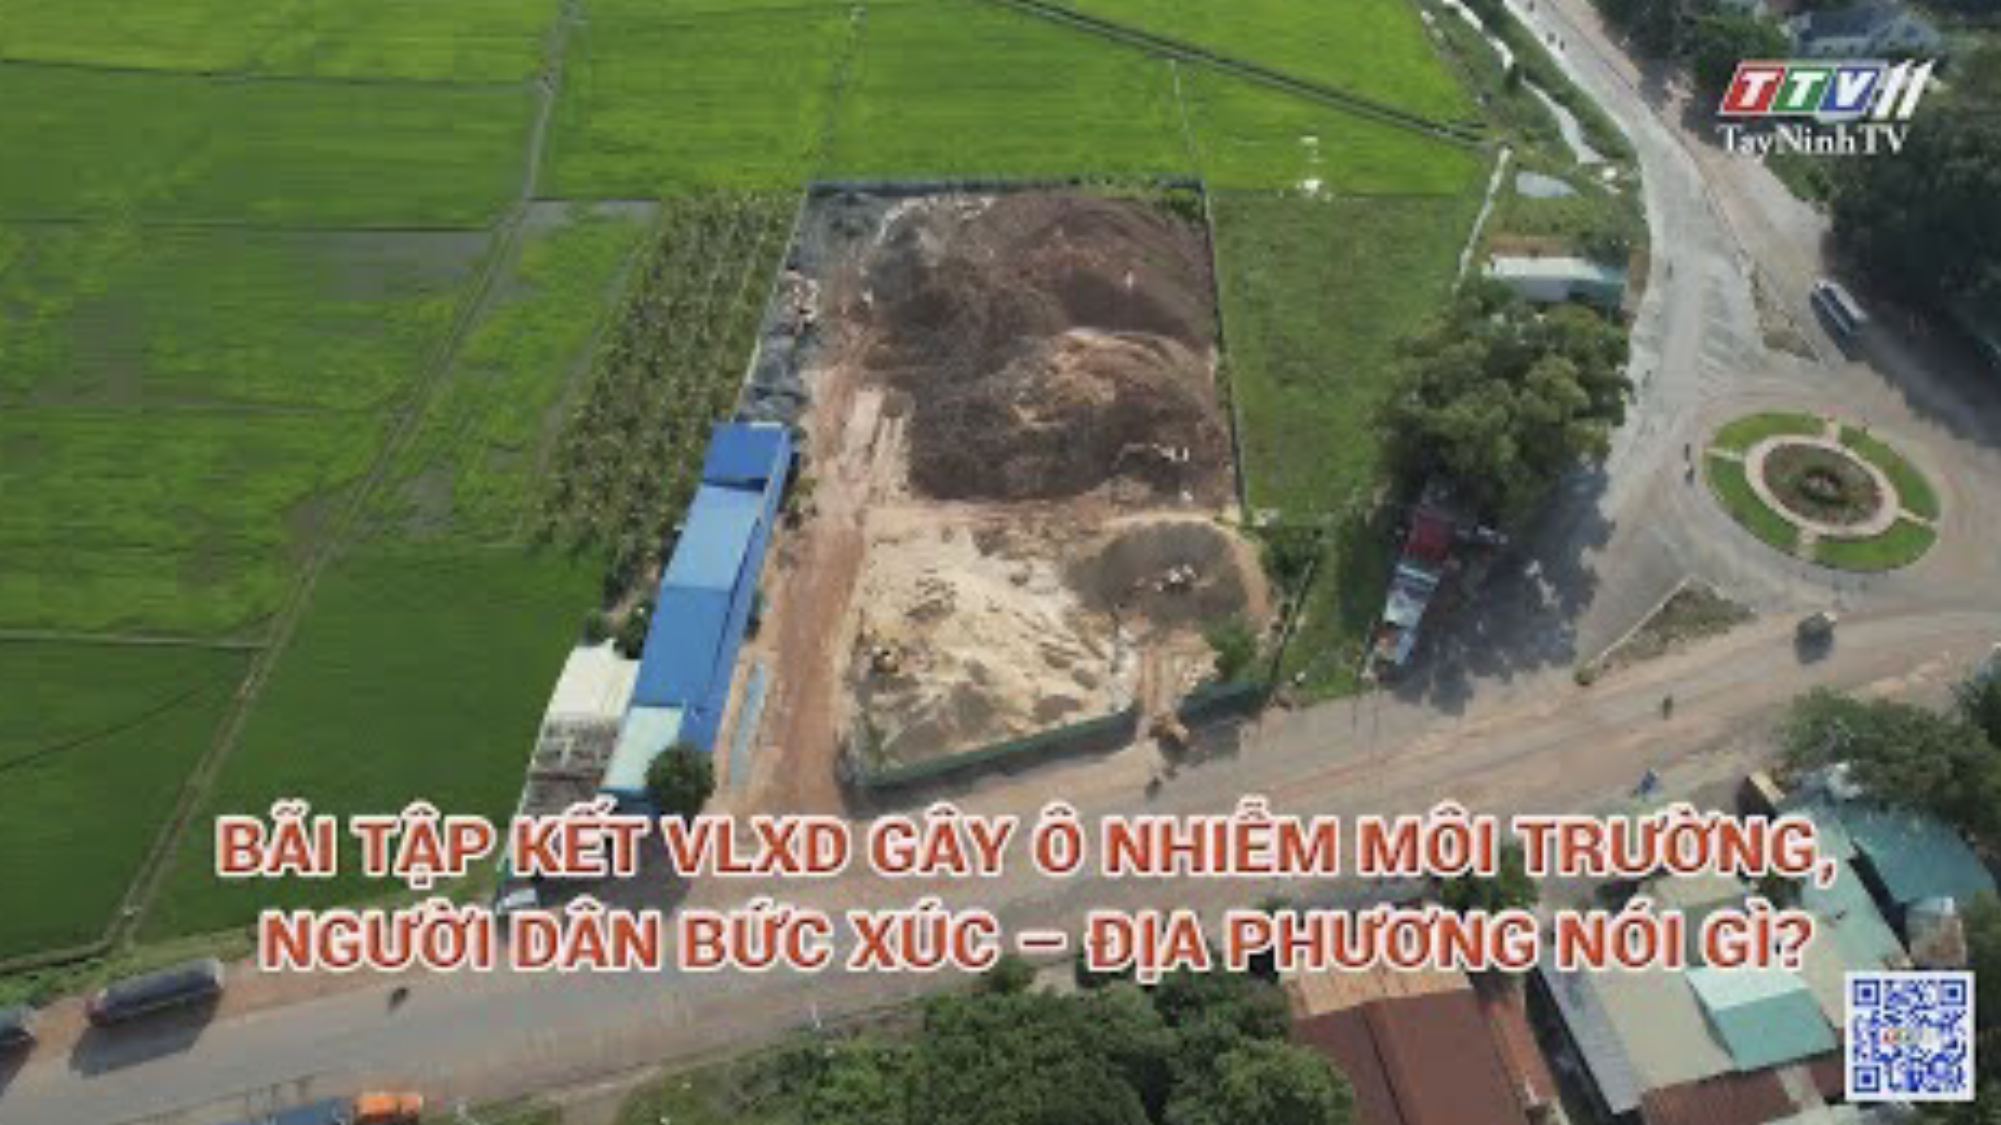 Bãi tập kết VLXD gây ô nhiễm môi trường, người dân bức xúc - Địa phương nói gì | Hộp thư truyền hình | TayNinhTV